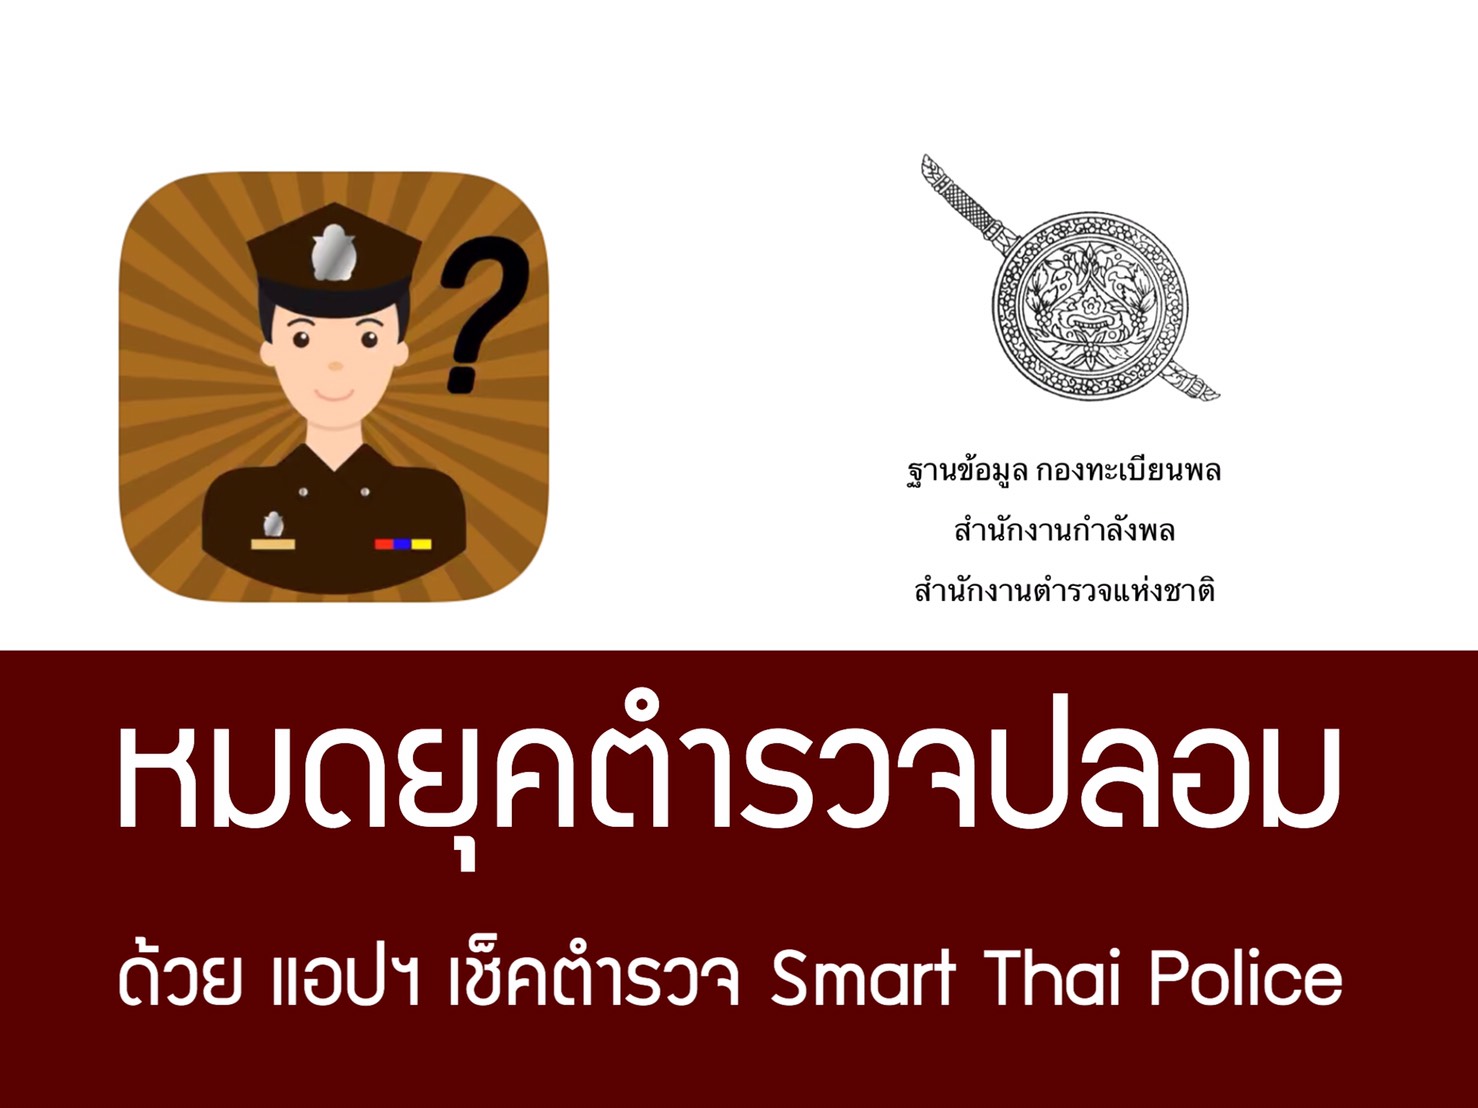 เช็คตำรวจจริง หรือ ตำรวจปลอม ด้วยแอปพลิเคชั่น Smart Thai Police